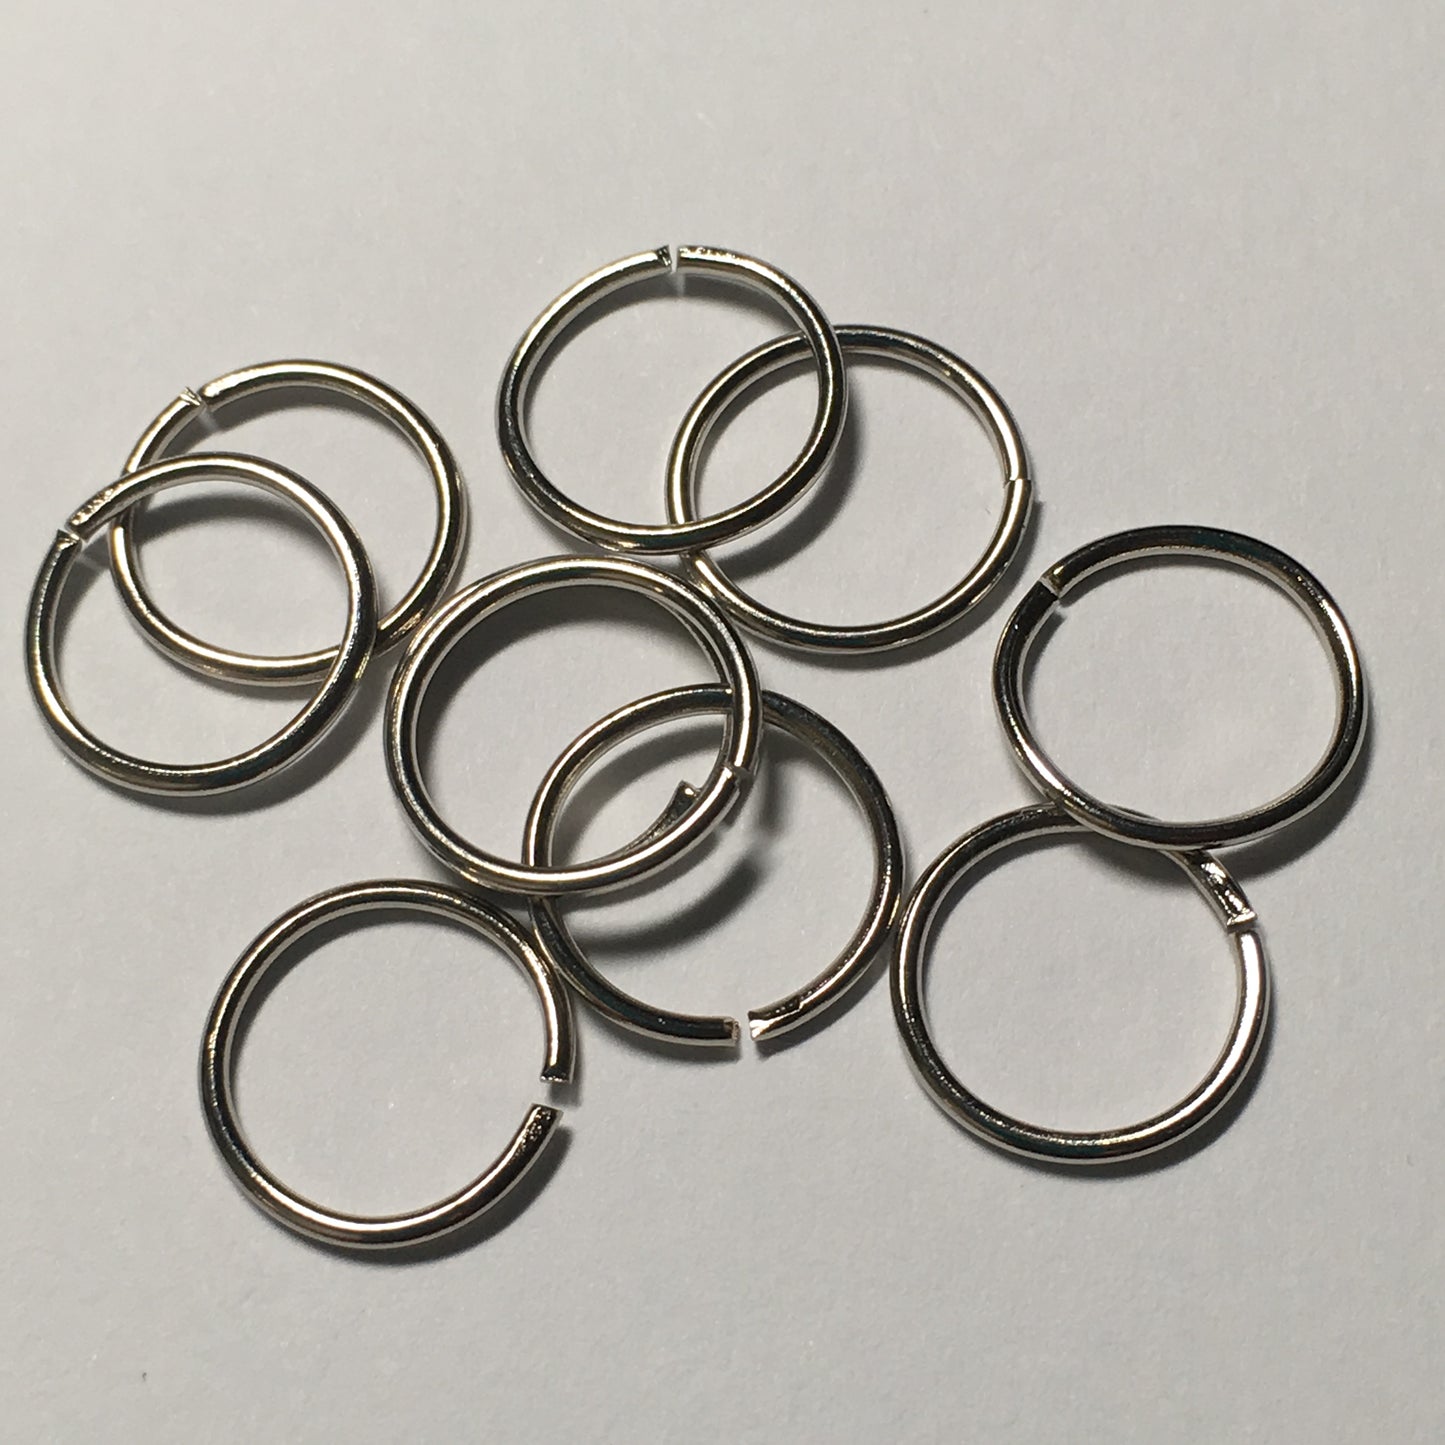 12 mm 18-Gauge Stainless Steel Unsoldered 1 mm Split Jump Rings - 4 or 10 Rings